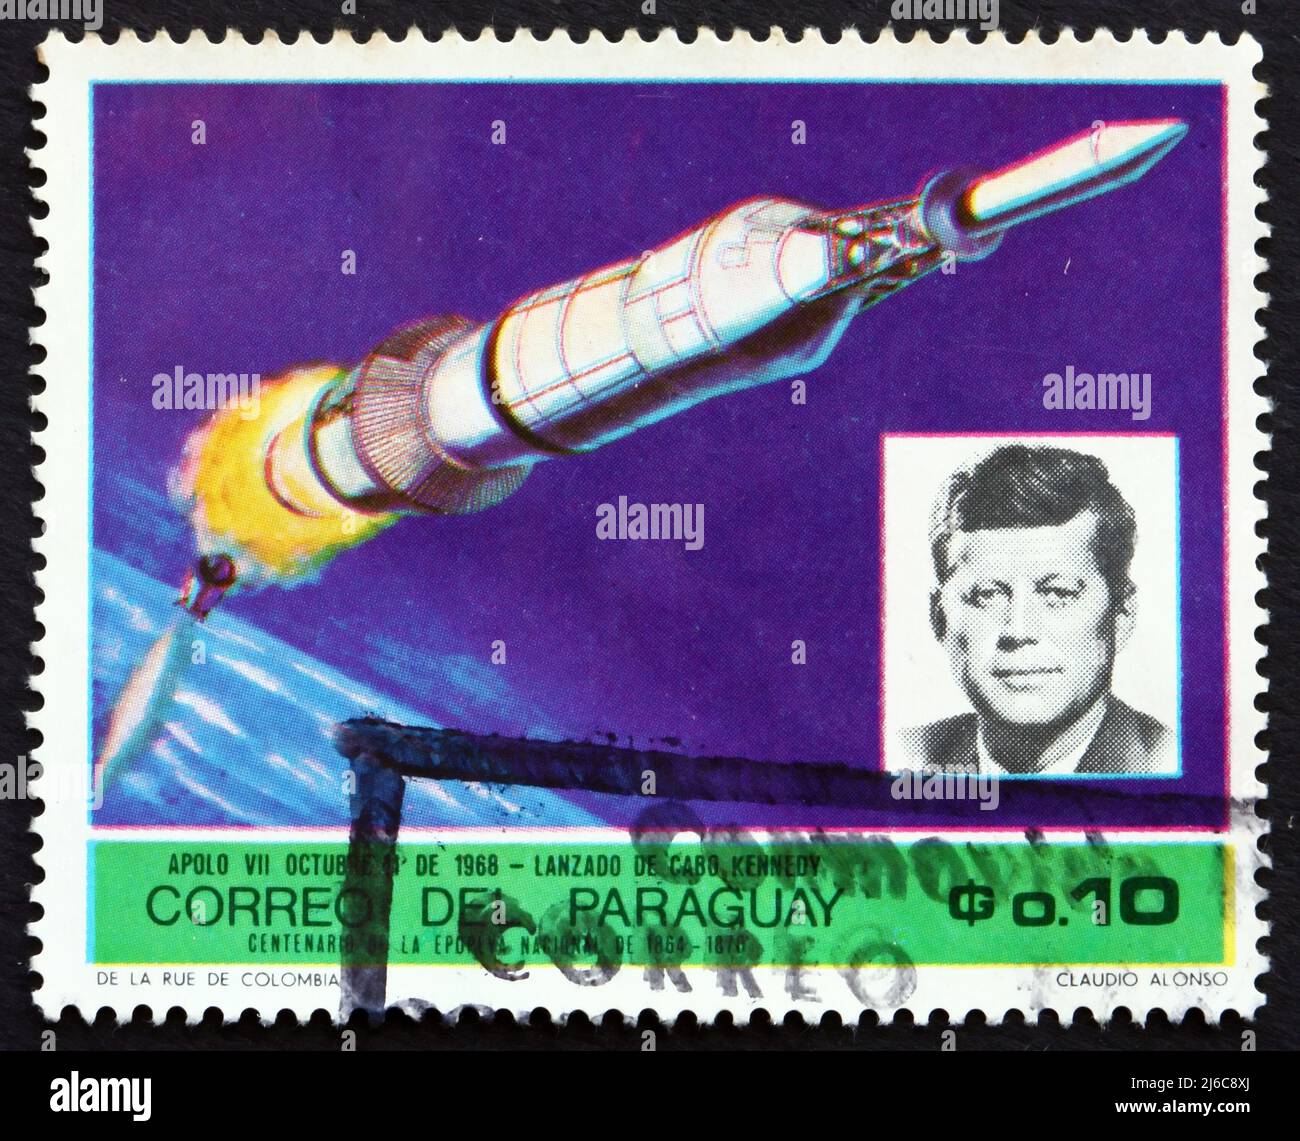 PARAGUAY - VERS 1969: Un timbre imprimé au Paraguay montre Apollo 7 et John F. Kennedy, missions spatiales, vers 1969 Banque D'Images